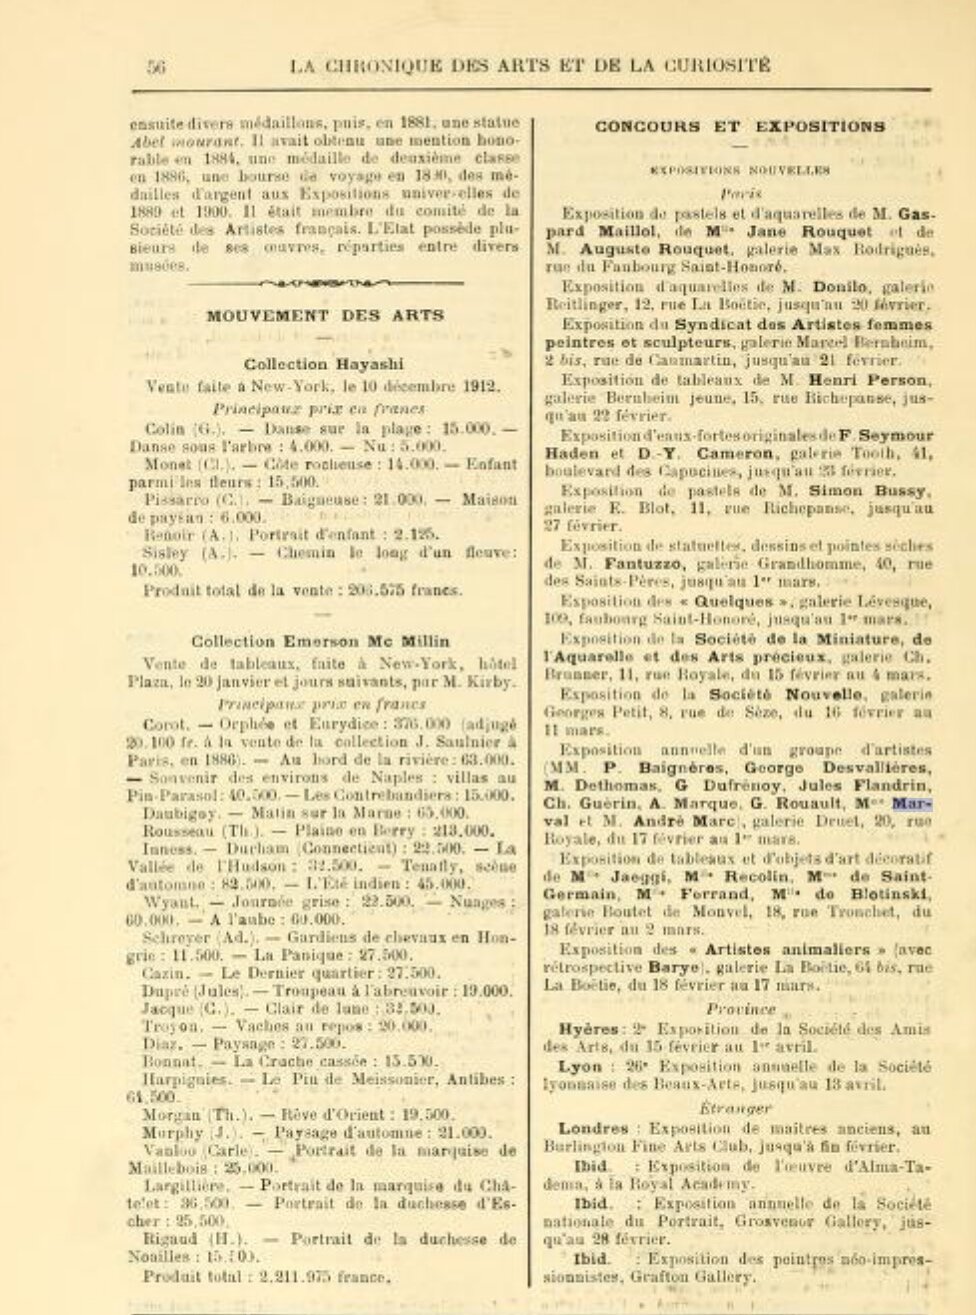 Chronique des Arts et de la Curiosité, Gazette des Beaux-Arts, février 1913